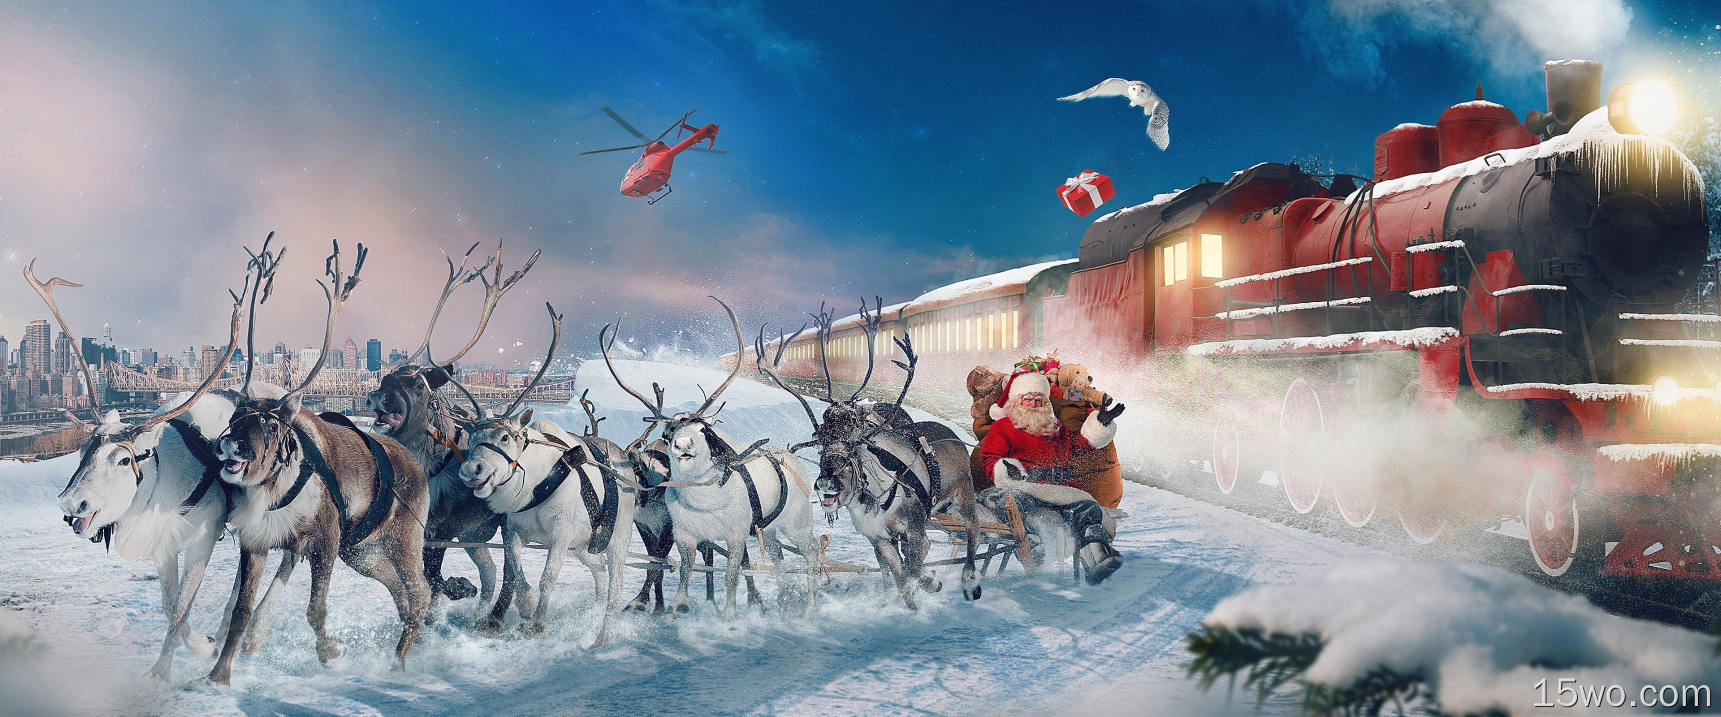 节日 圣诞节 Santa Sleigh Reindeer 火车 冬季 高清壁纸